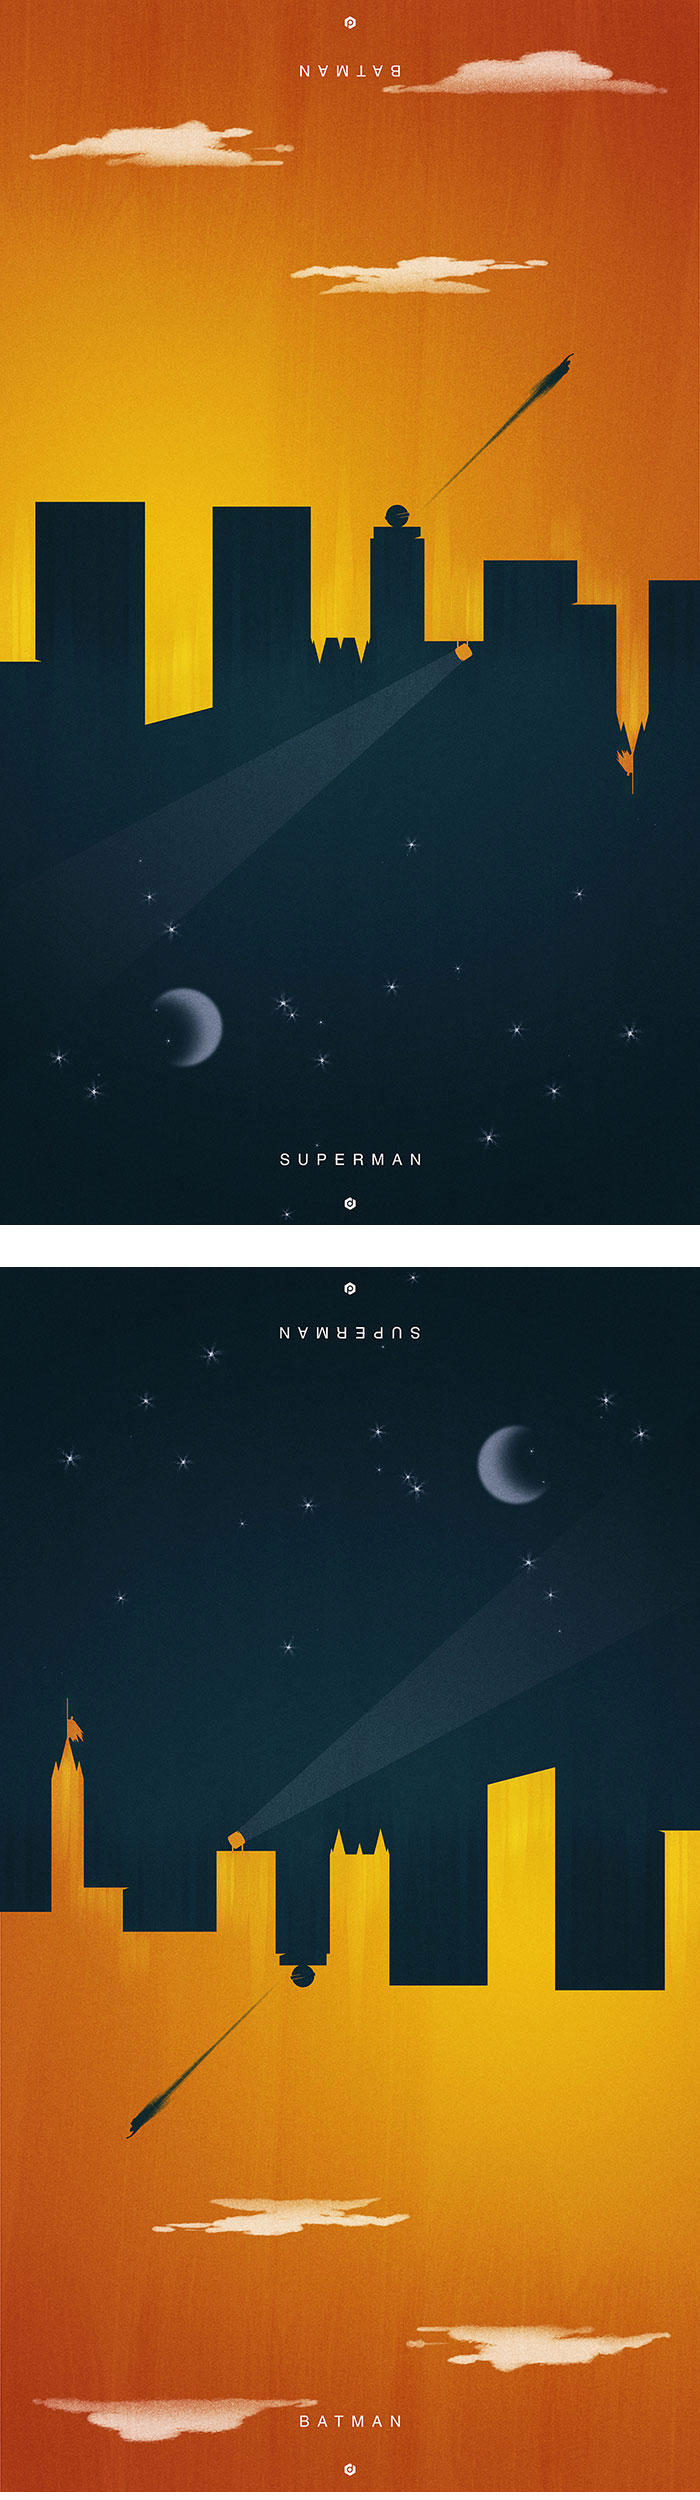 batman-superman-univers